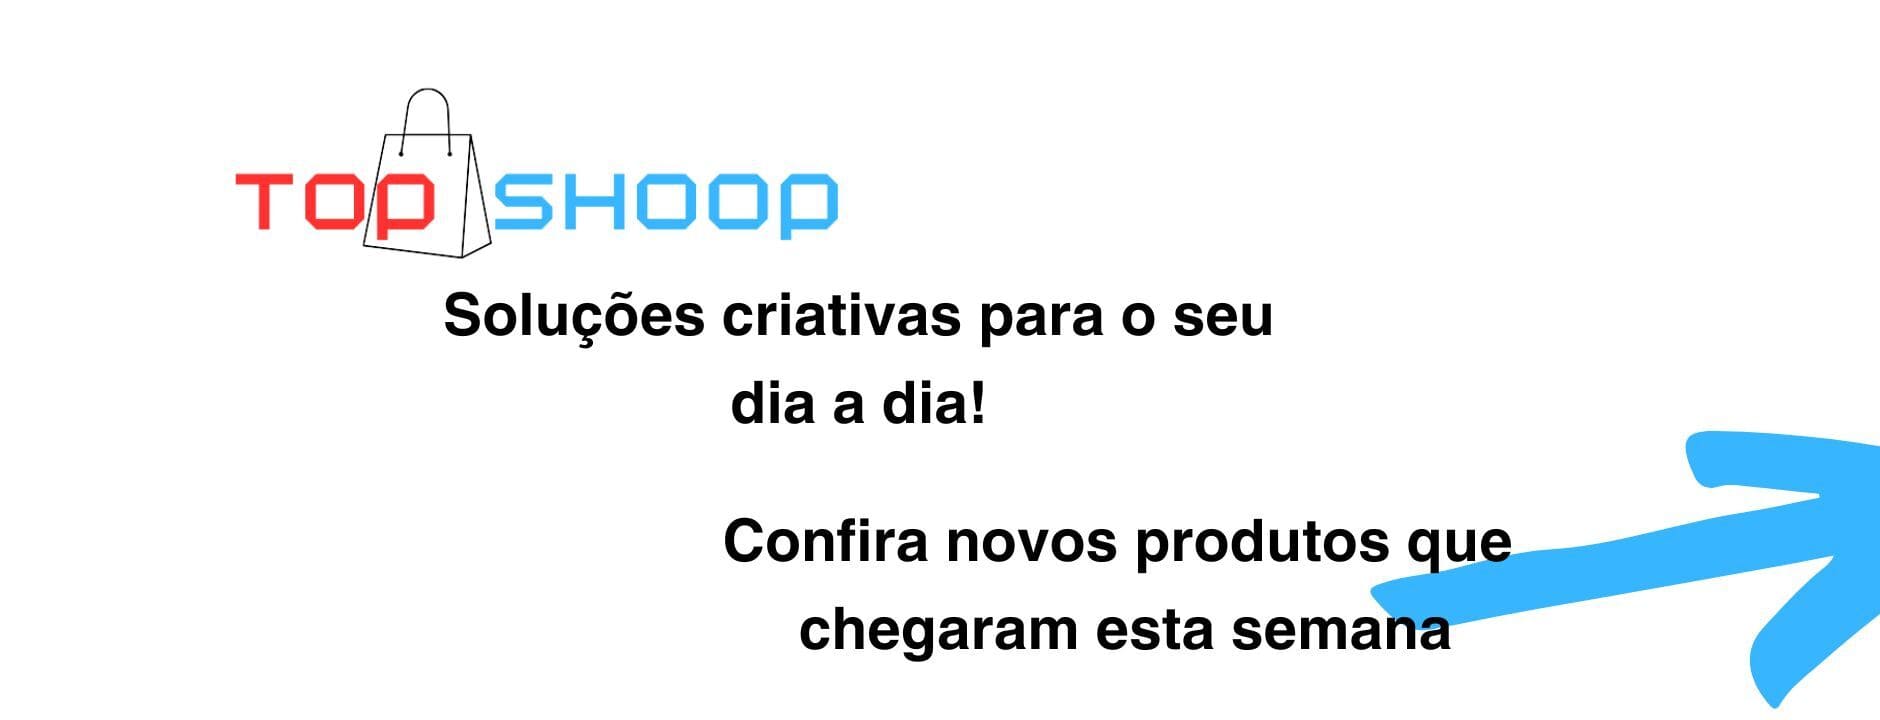 Top-shoop